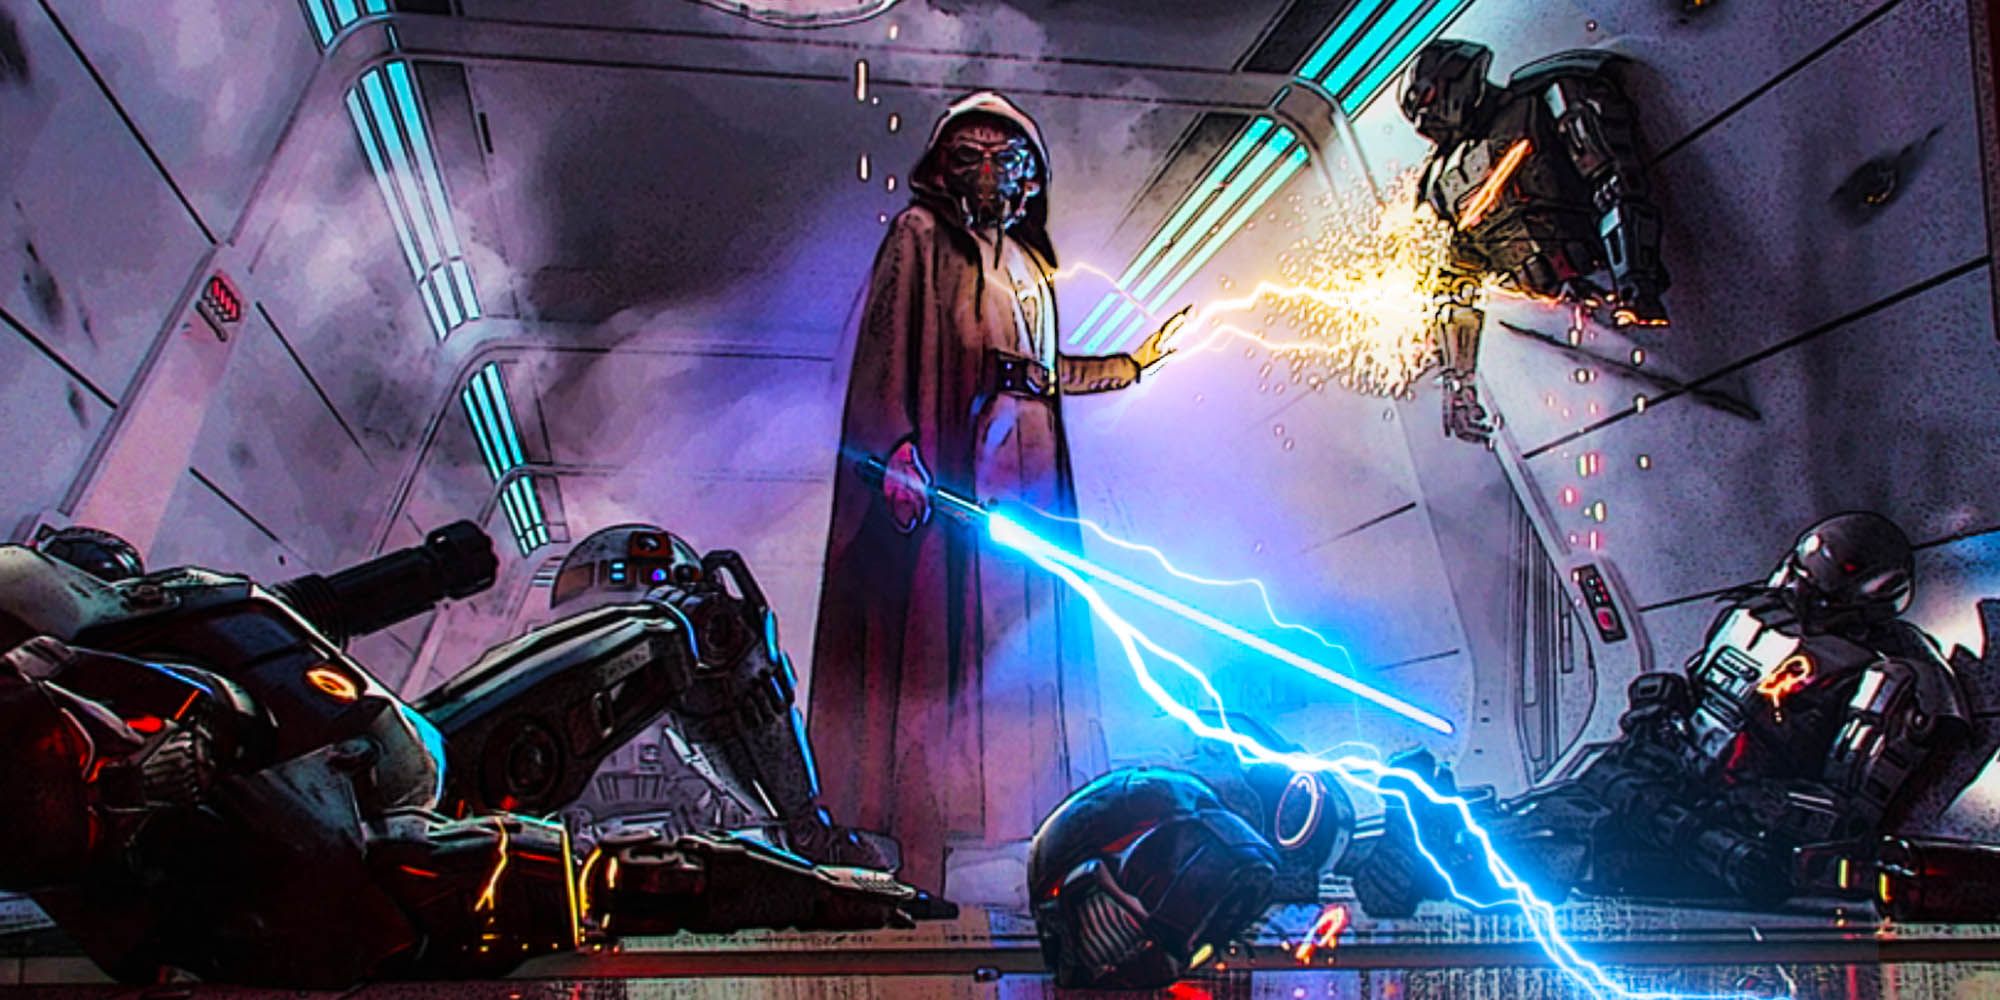 Plo Koon's Force Lightning Could Change Star Wars' Dark Side Power Rule